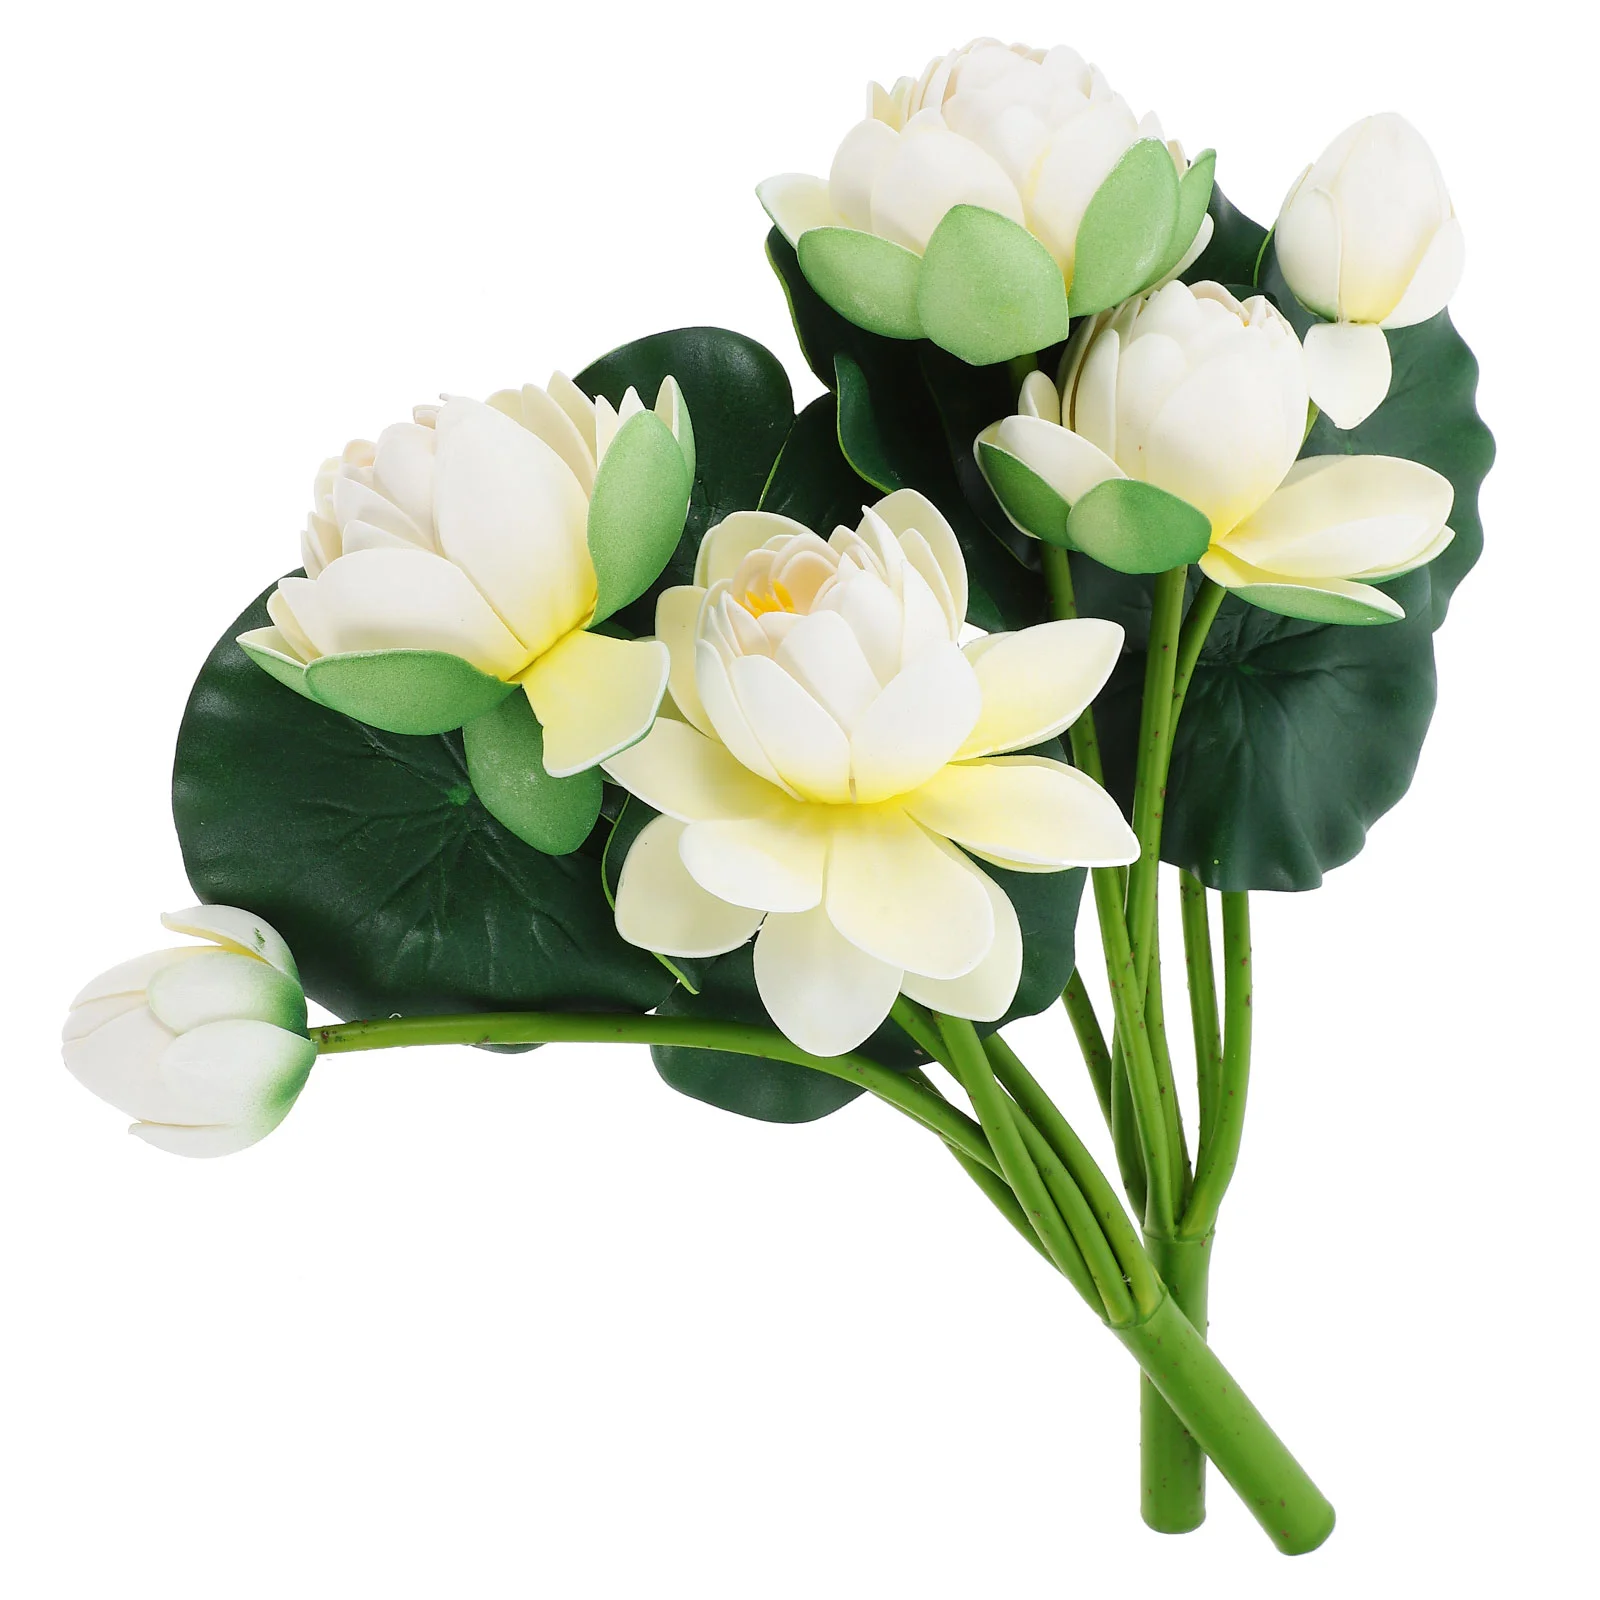 

Имитация лотоса декоративная Реалистичная искусственная фотография Реквизит вазы цветы наполнитель Eva Bride Mini 2 шт.